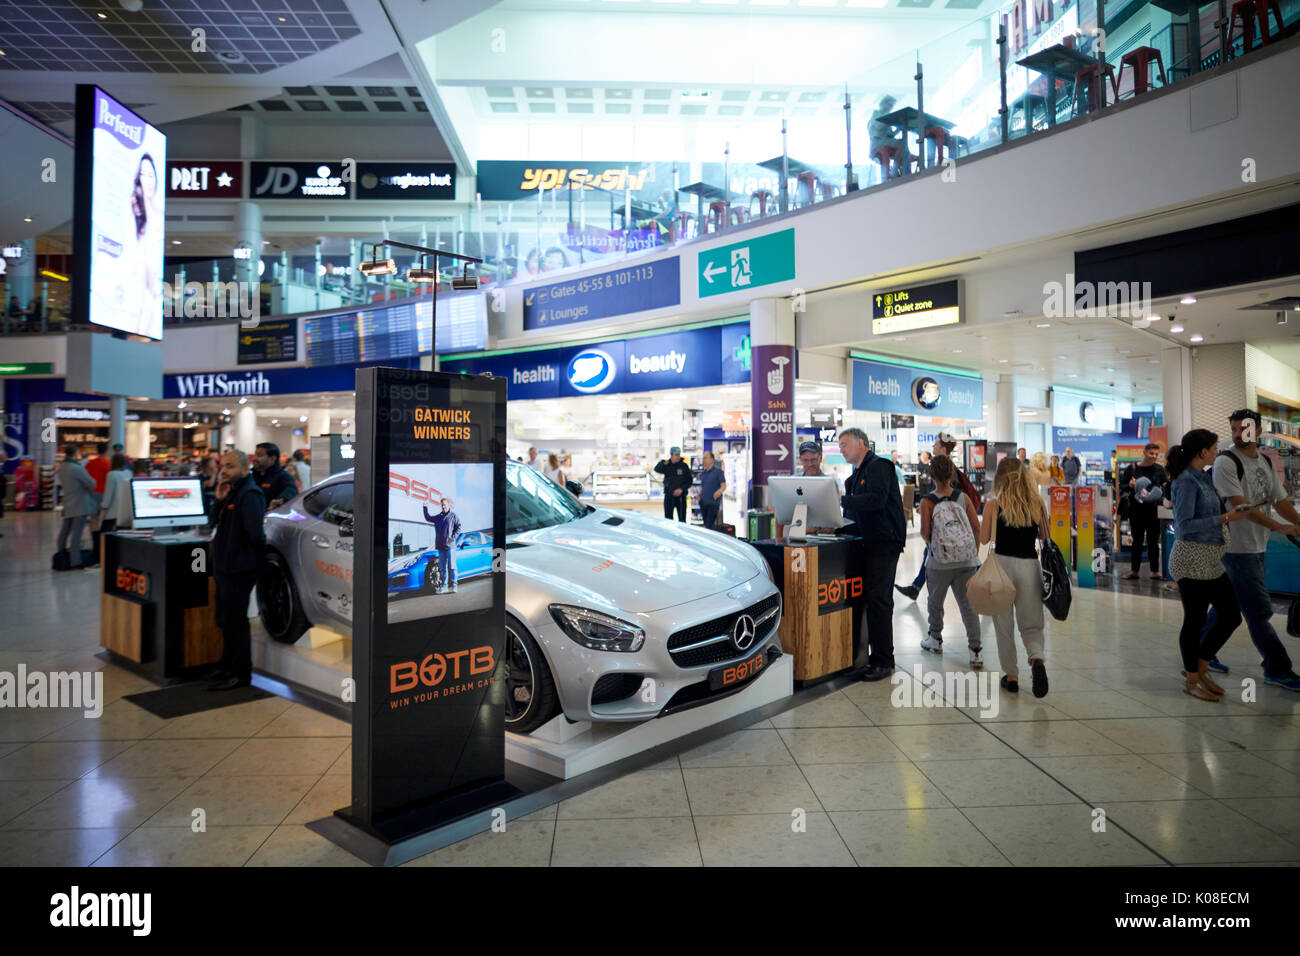 Vinci un auto BOTB concorsi all'interno del Terminal Nord all'Aeroporto Internazionale di Gatwick Foto Stock